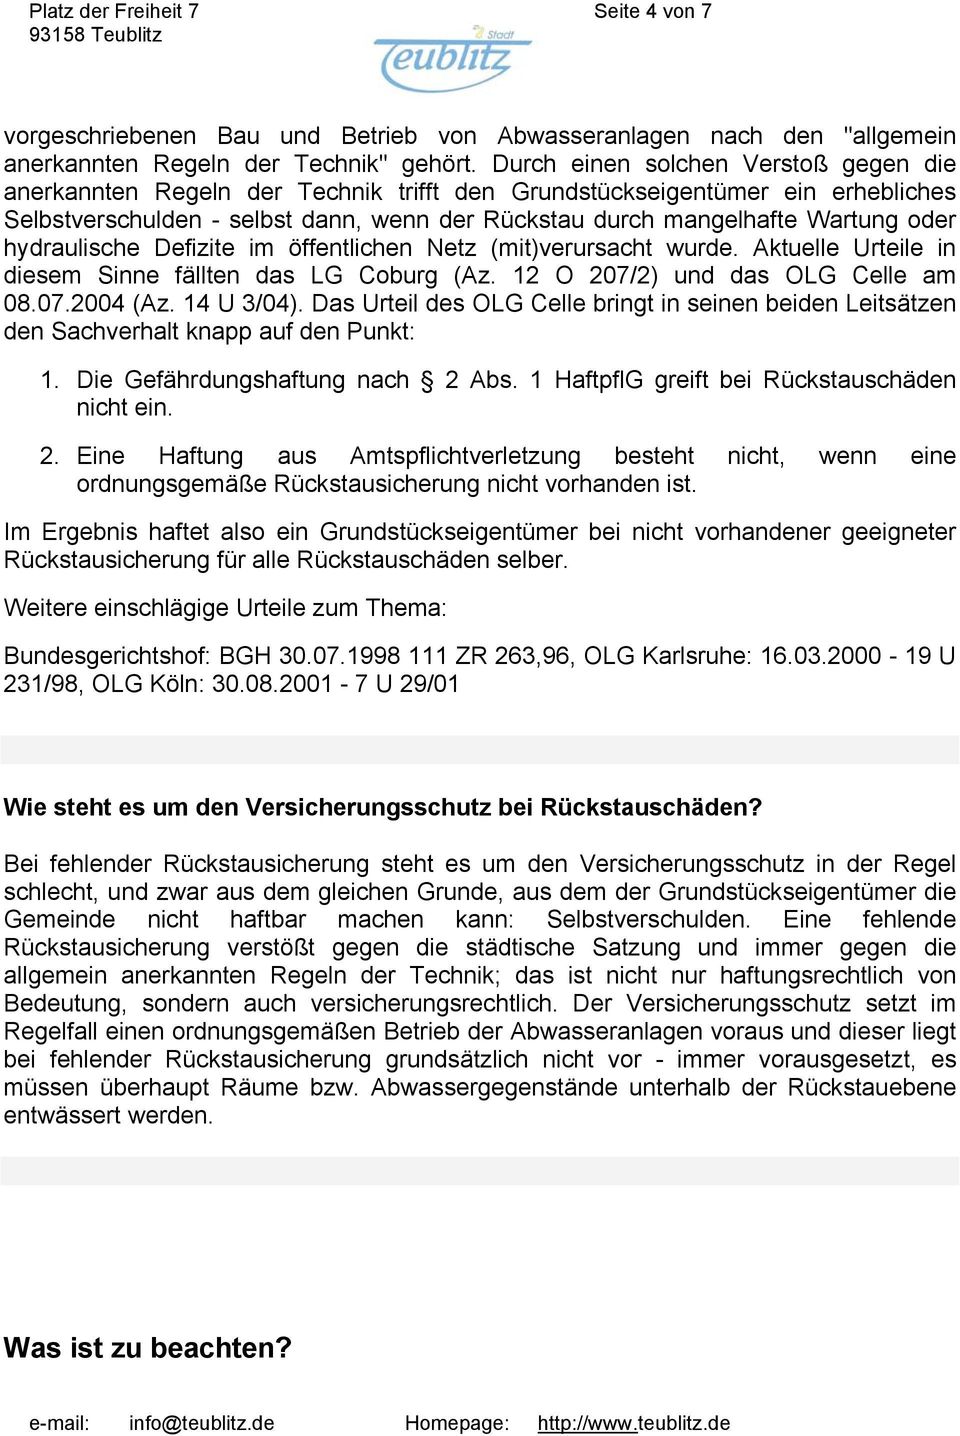 hydraulische Defizite im öffentlichen Netz (mit)verursacht wurde. Aktuelle Urteile in diesem Sinne fällten das LG Coburg (Az. 12 O 207/2) und das OLG Celle am 08.07.2004 (Az. 14 U 3/04).